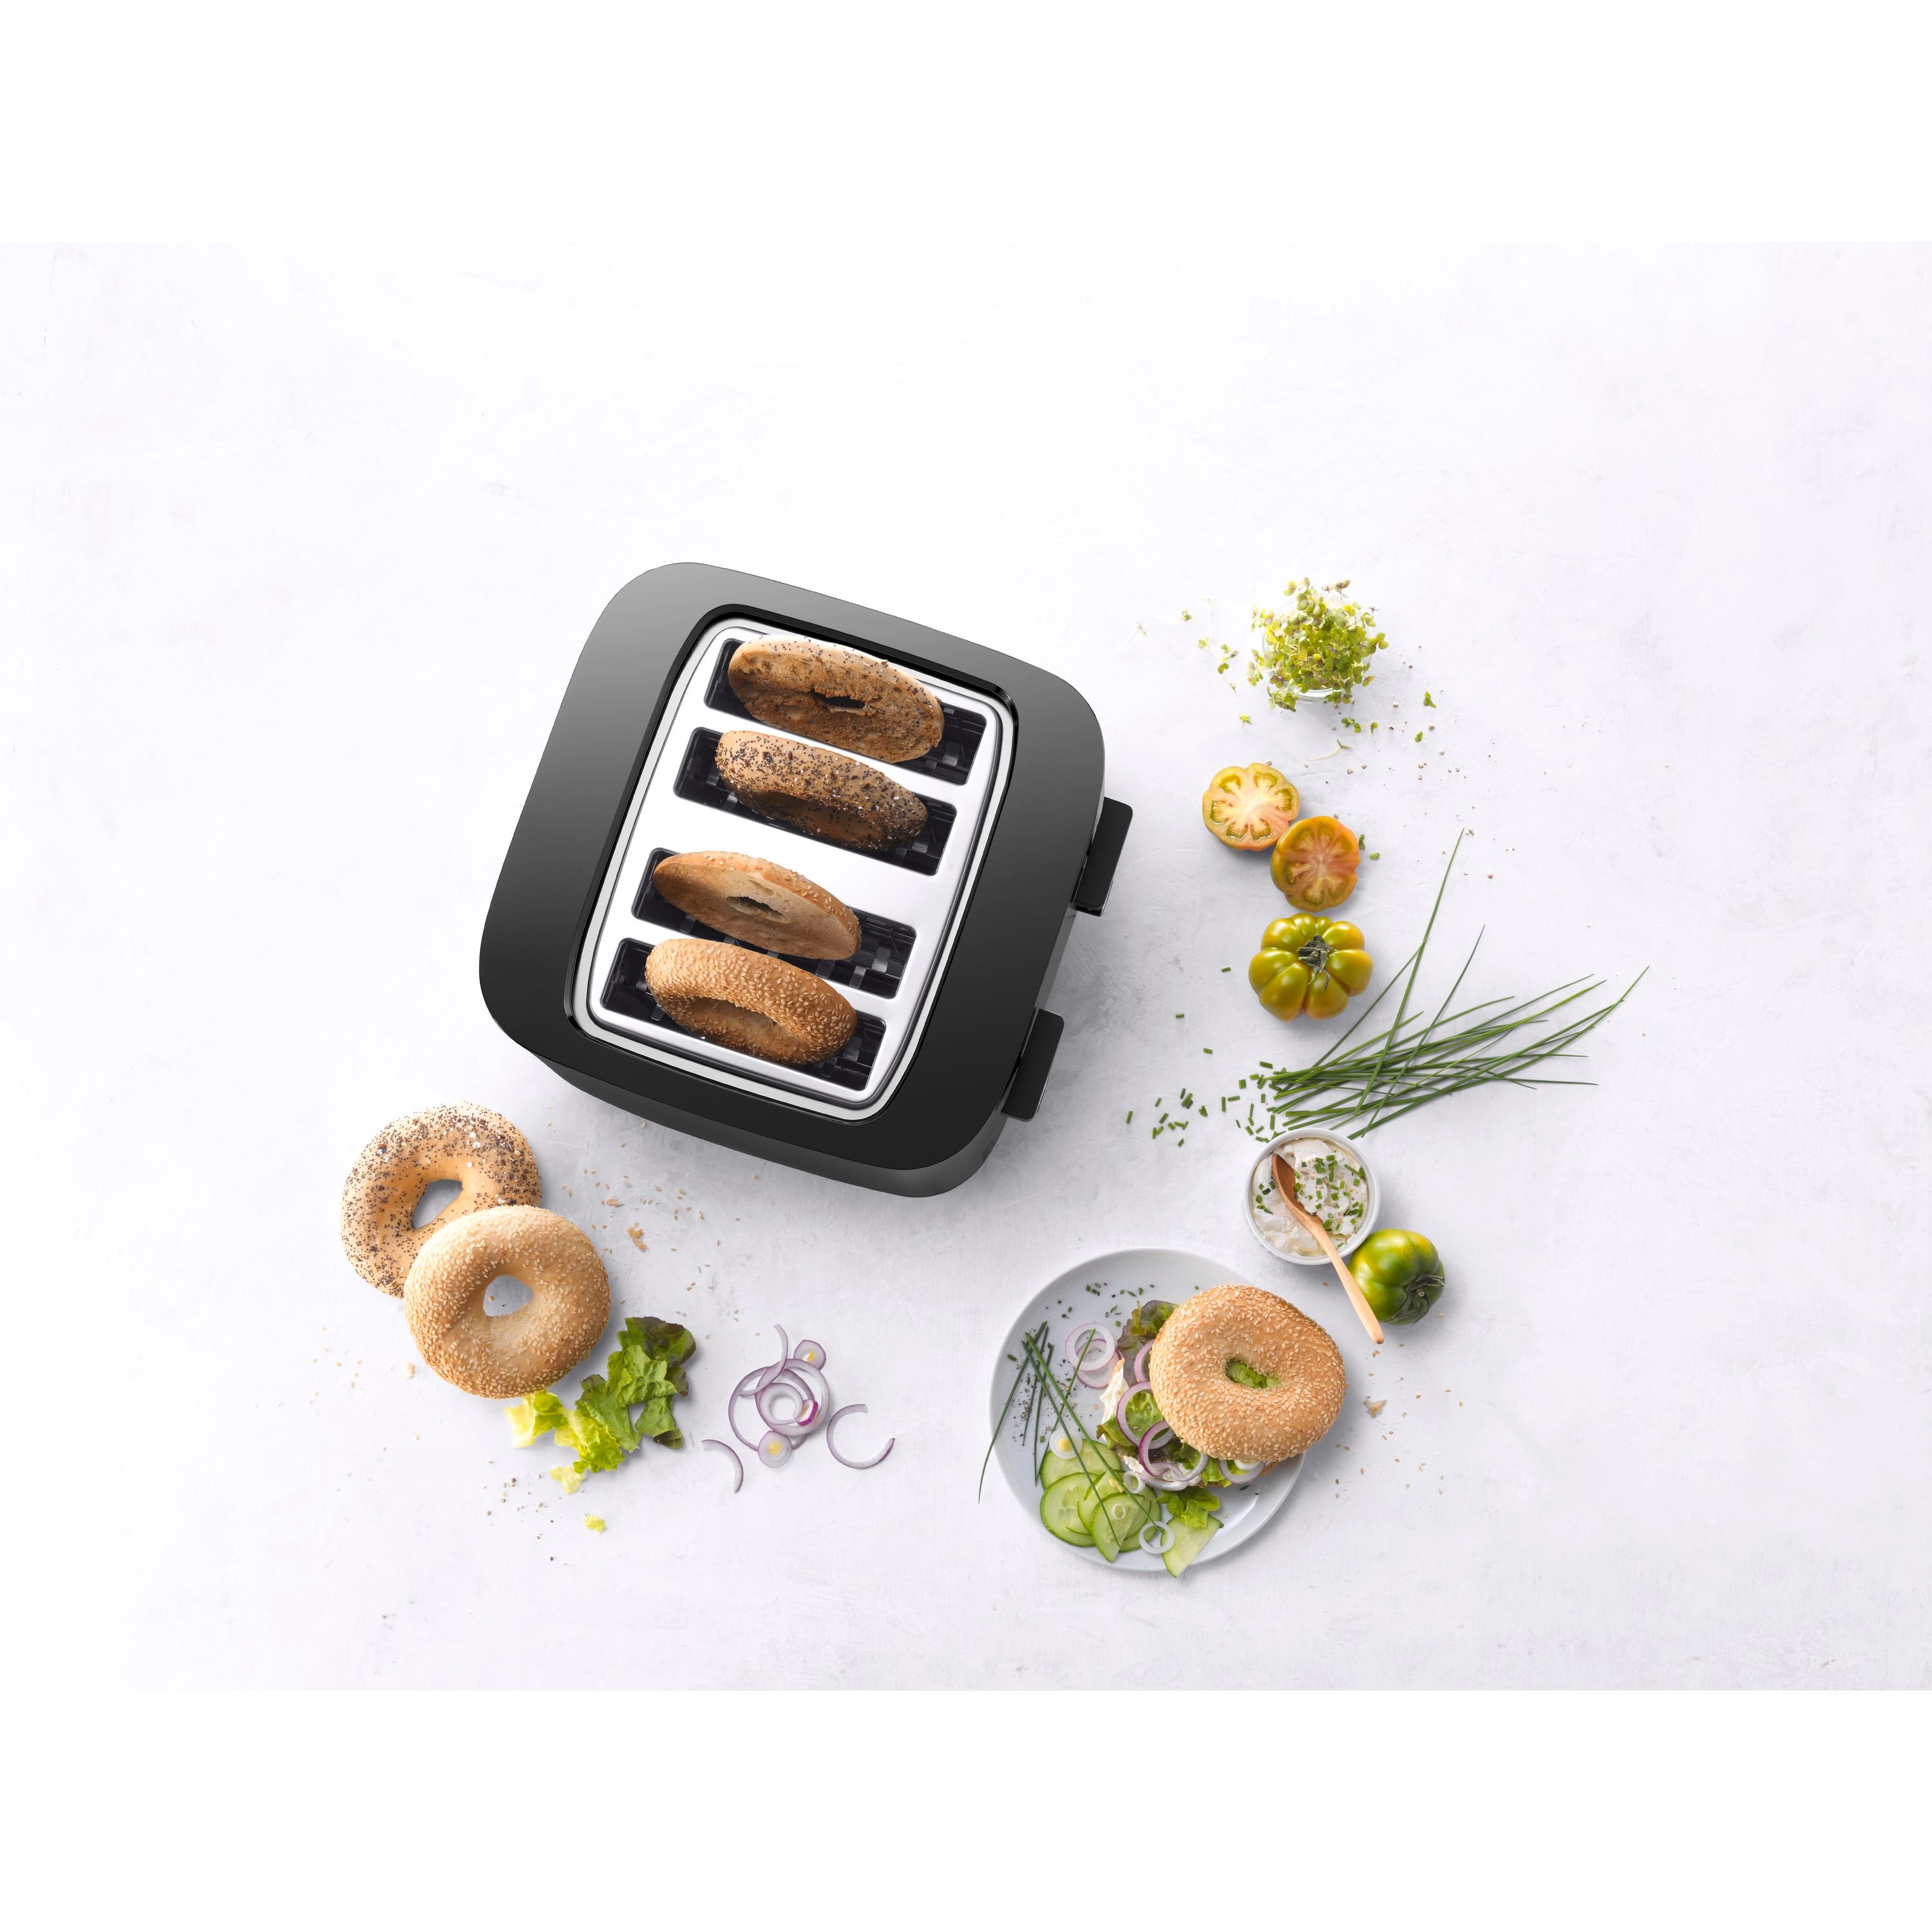 ZWILLING Enfinigy 4-slot Toaster 